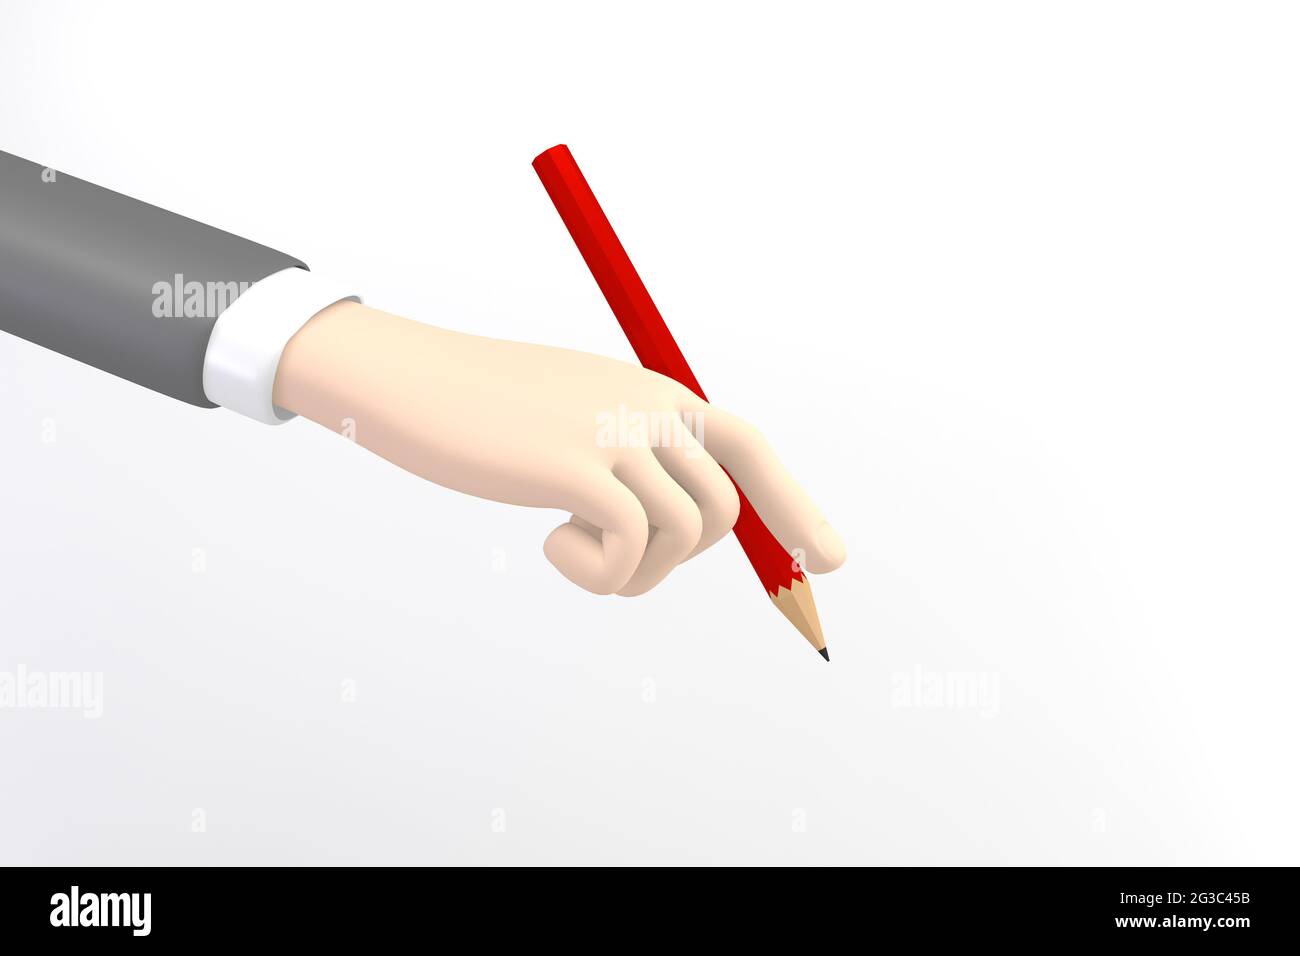 Maquette de dessin animé d'affaires main tenant un crayon rouge sur fond blanc. Rendu 3D Banque D'Images